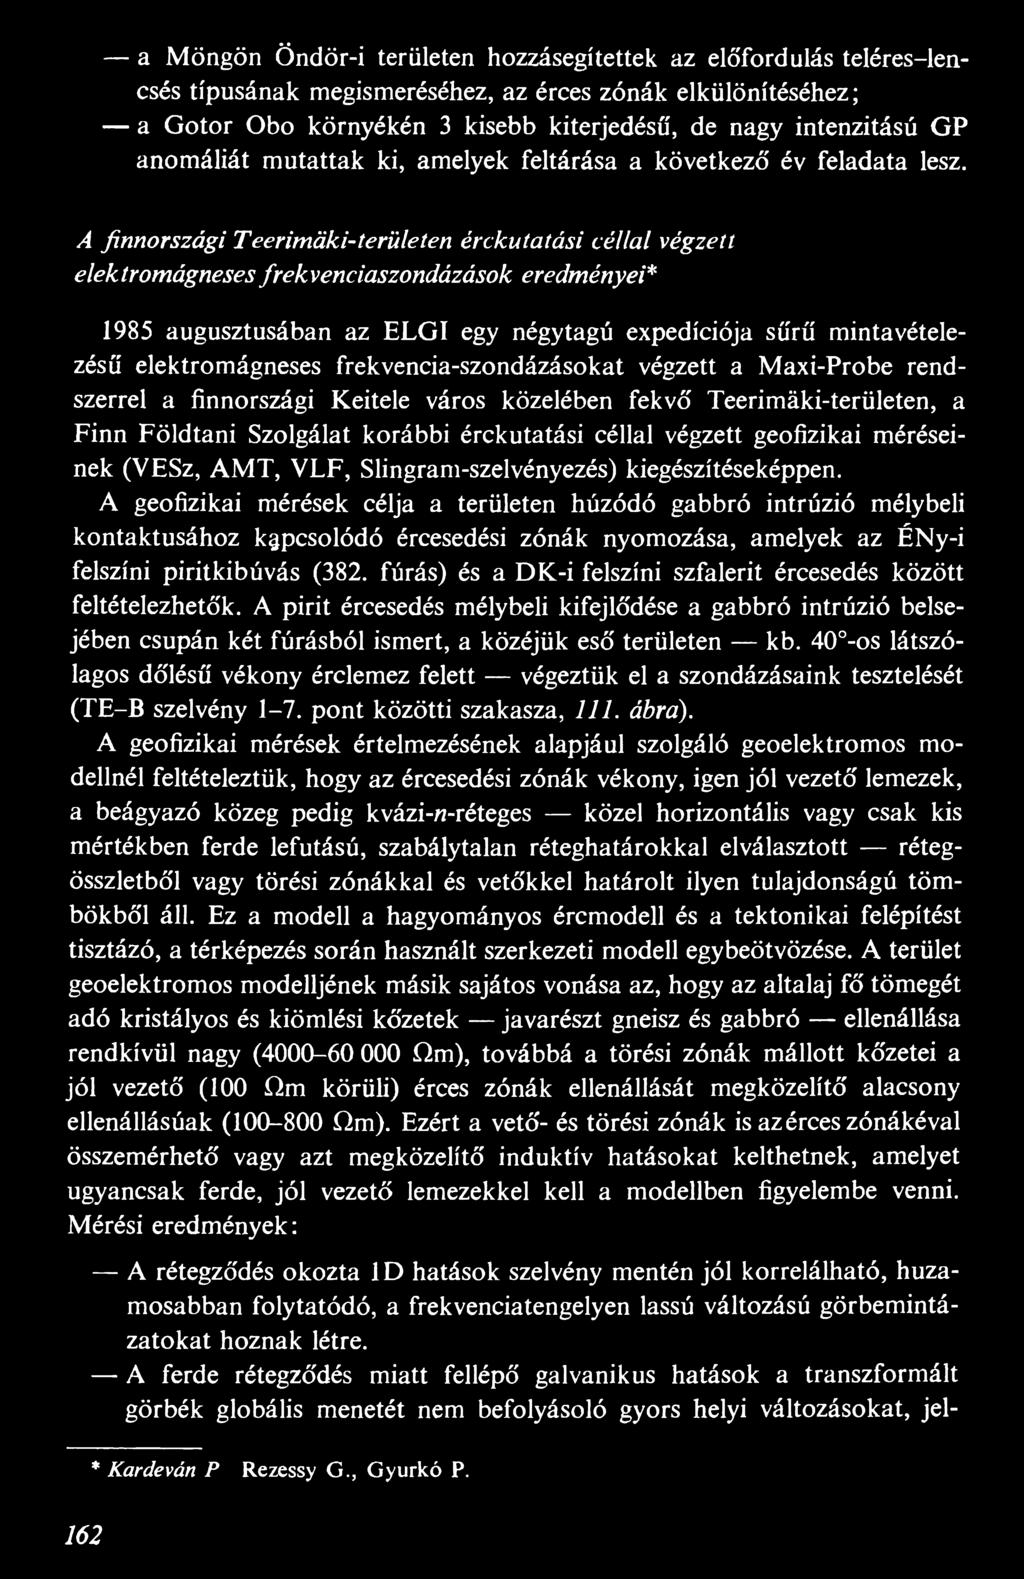 A finnországi Teerimáki-területen érckutatási céllal végzett elektromágneses frekvenciaszondázások eredményei* 1985 augusztusában az ELGÍ egy négytagú expedíciója sűrű mintavételezésű elektromágneses